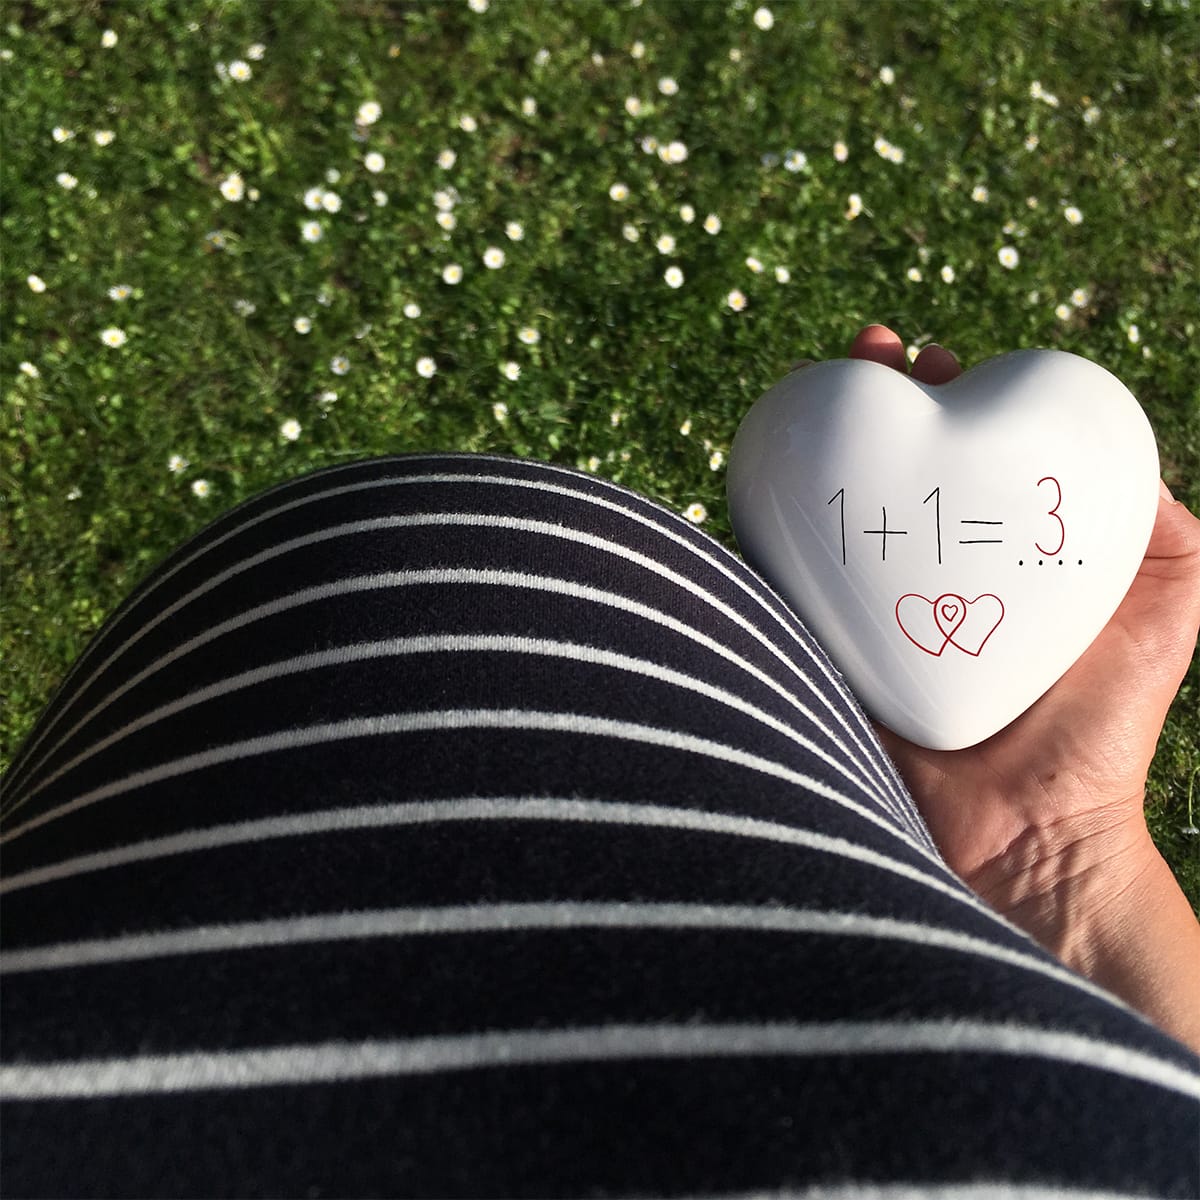 un cuore con la scritta 1+1=3 è tenuto in mano vicino ad una pancia di una futura mamma in attesa